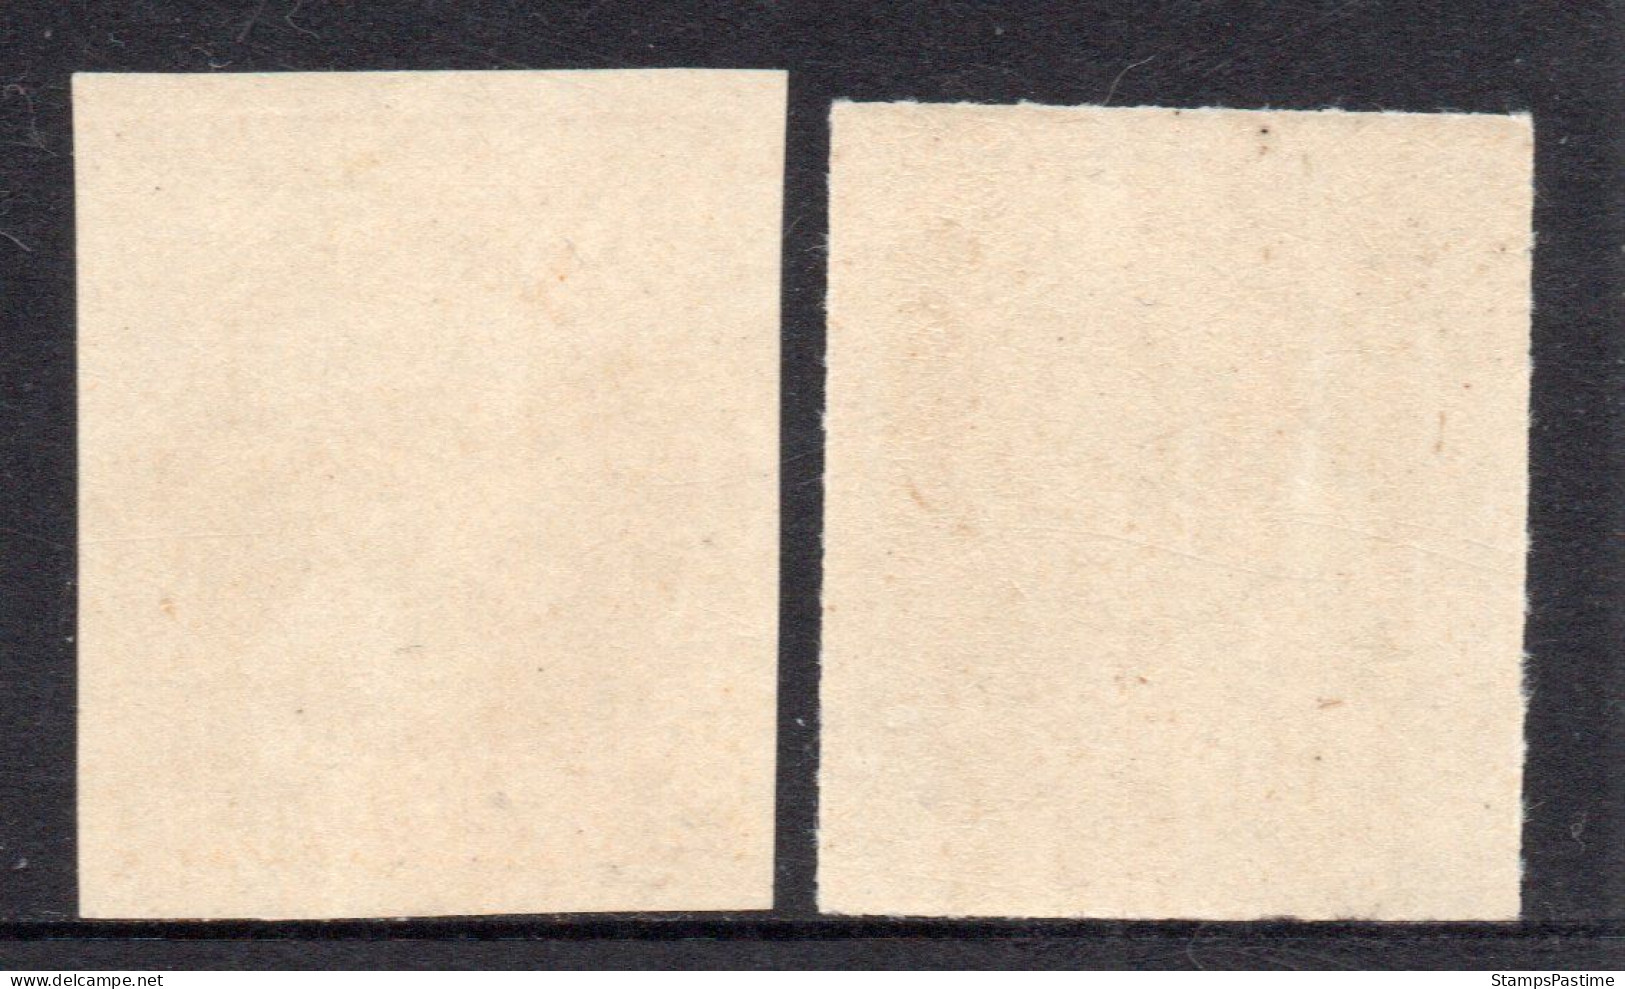 HANOVRE - HANNOVER (ALEMANIA) Serie X 2 Sellos Mint REY GEORGE V Años 1859-61 – Valorizada En Catálogo U$S 287.50 - Hannover